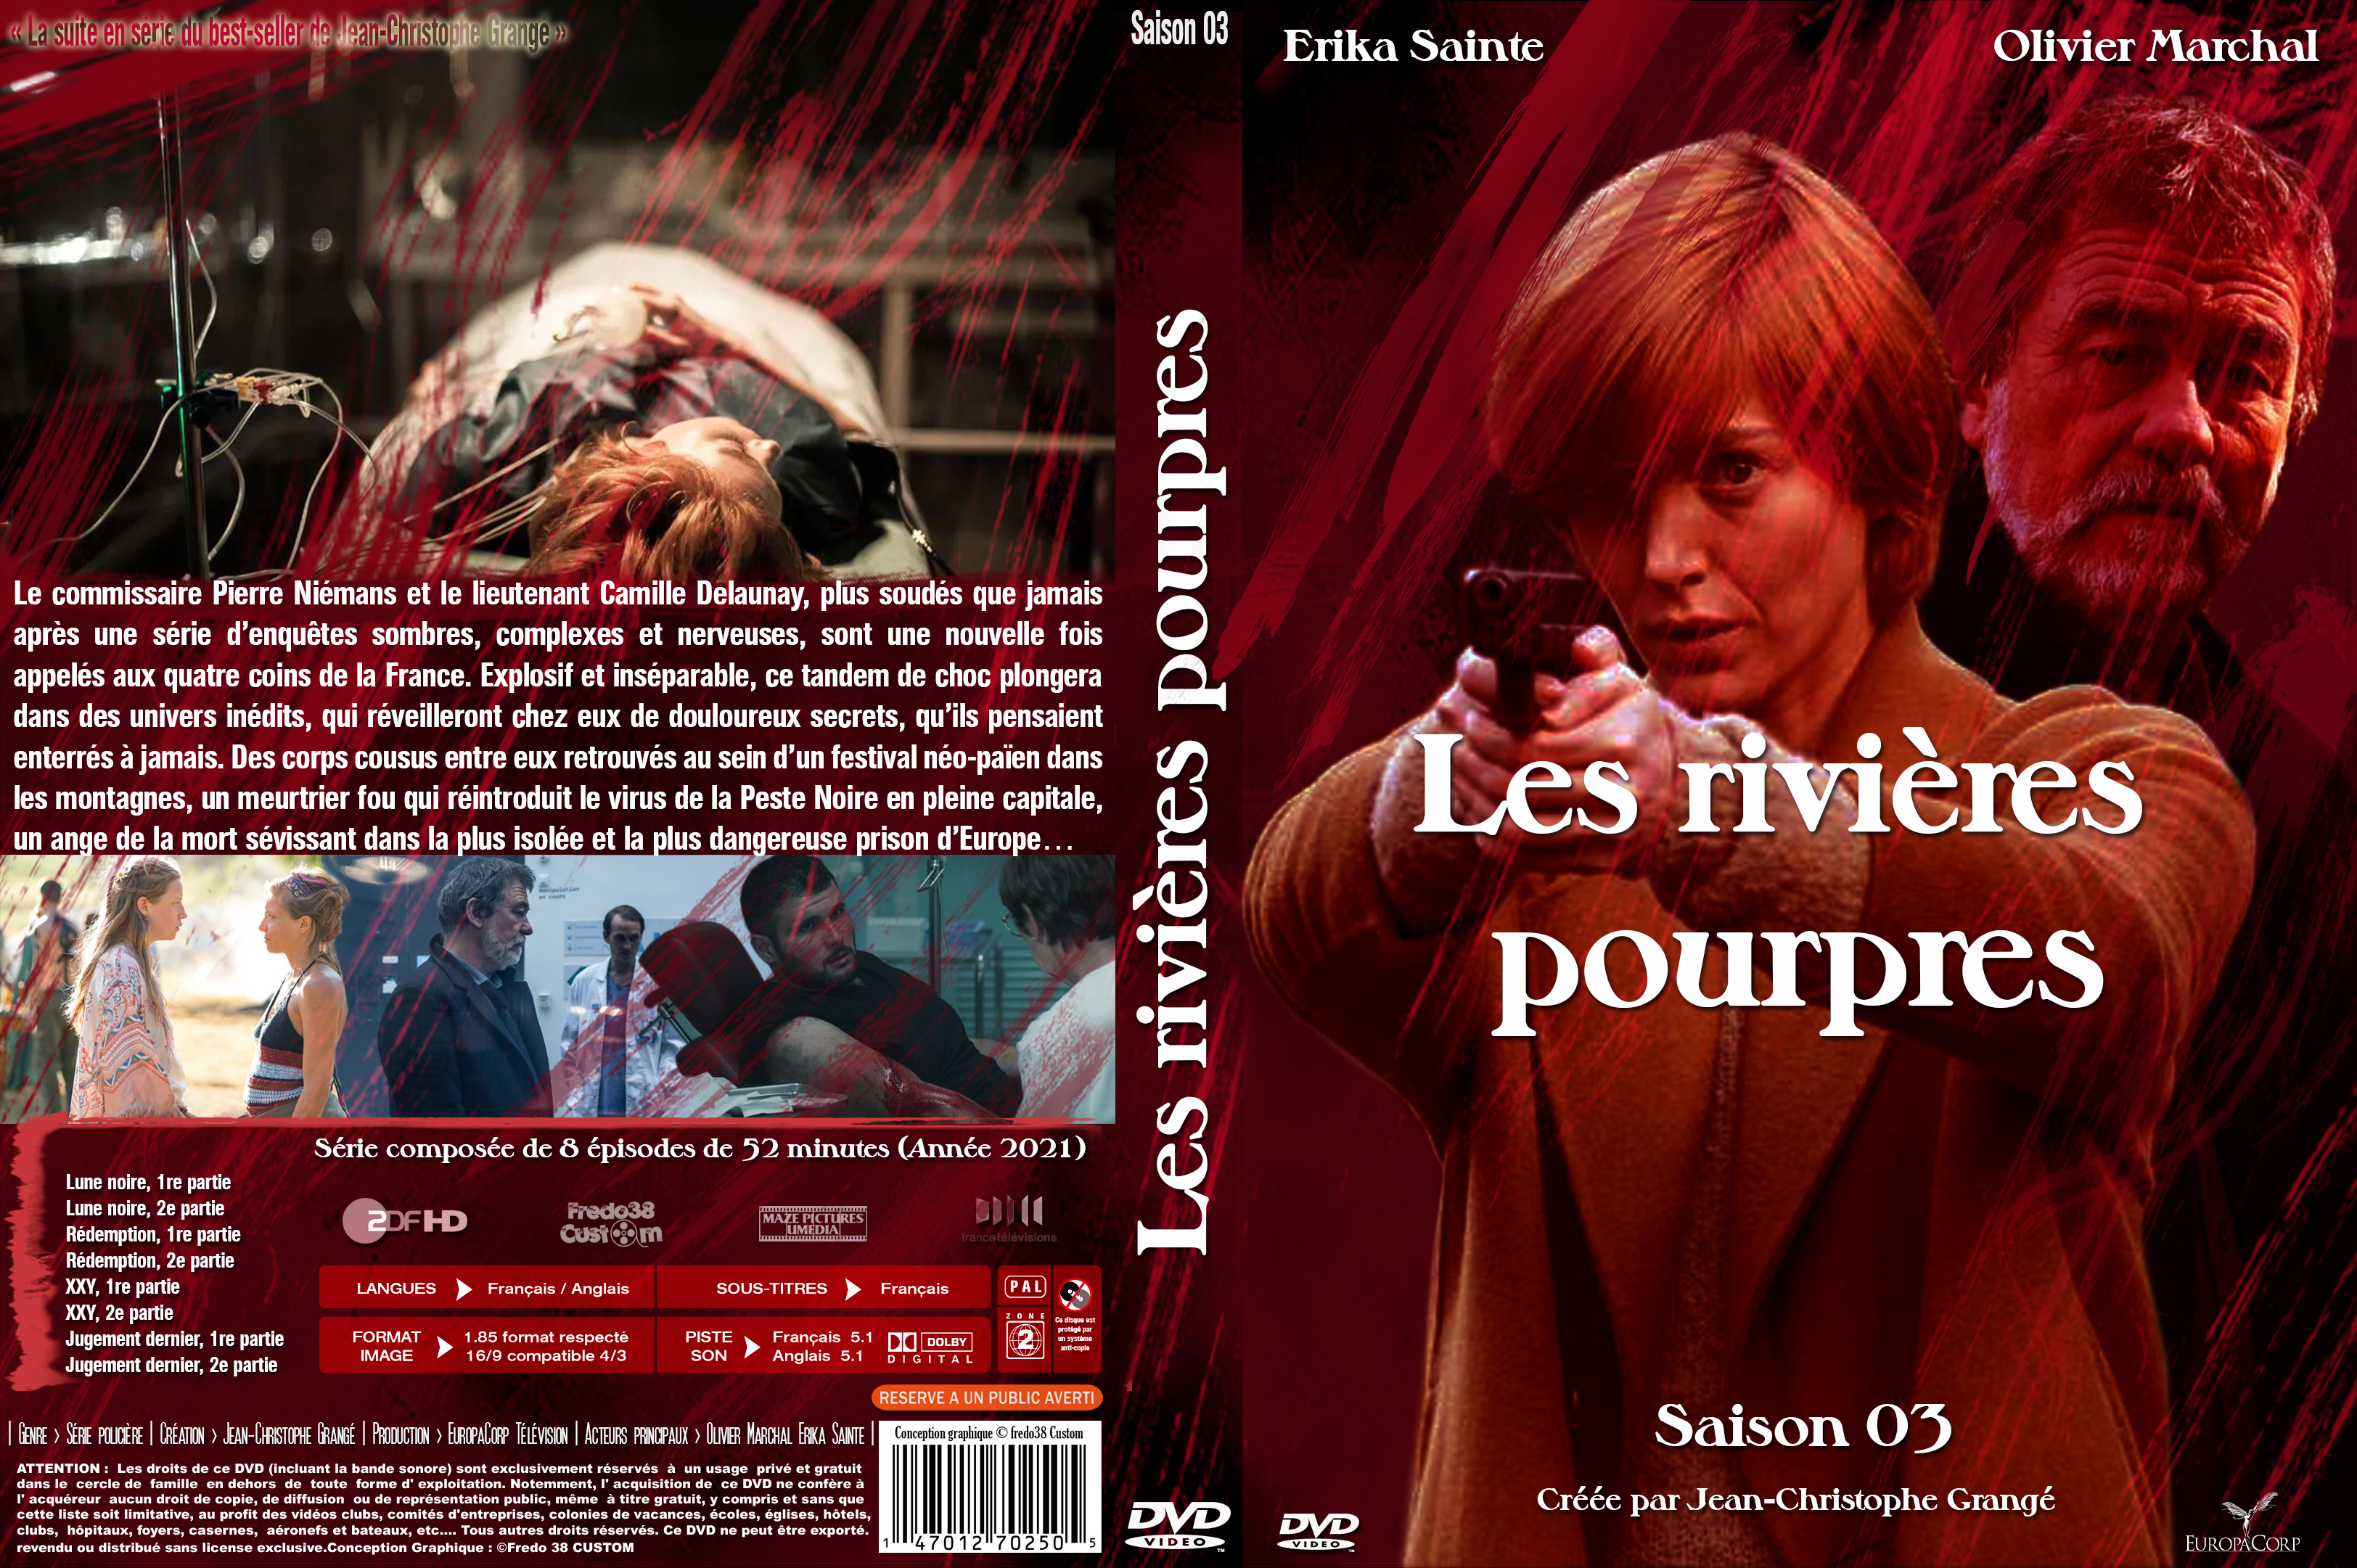 Jaquette DVD Les rivieres pourpres saison 3 custom